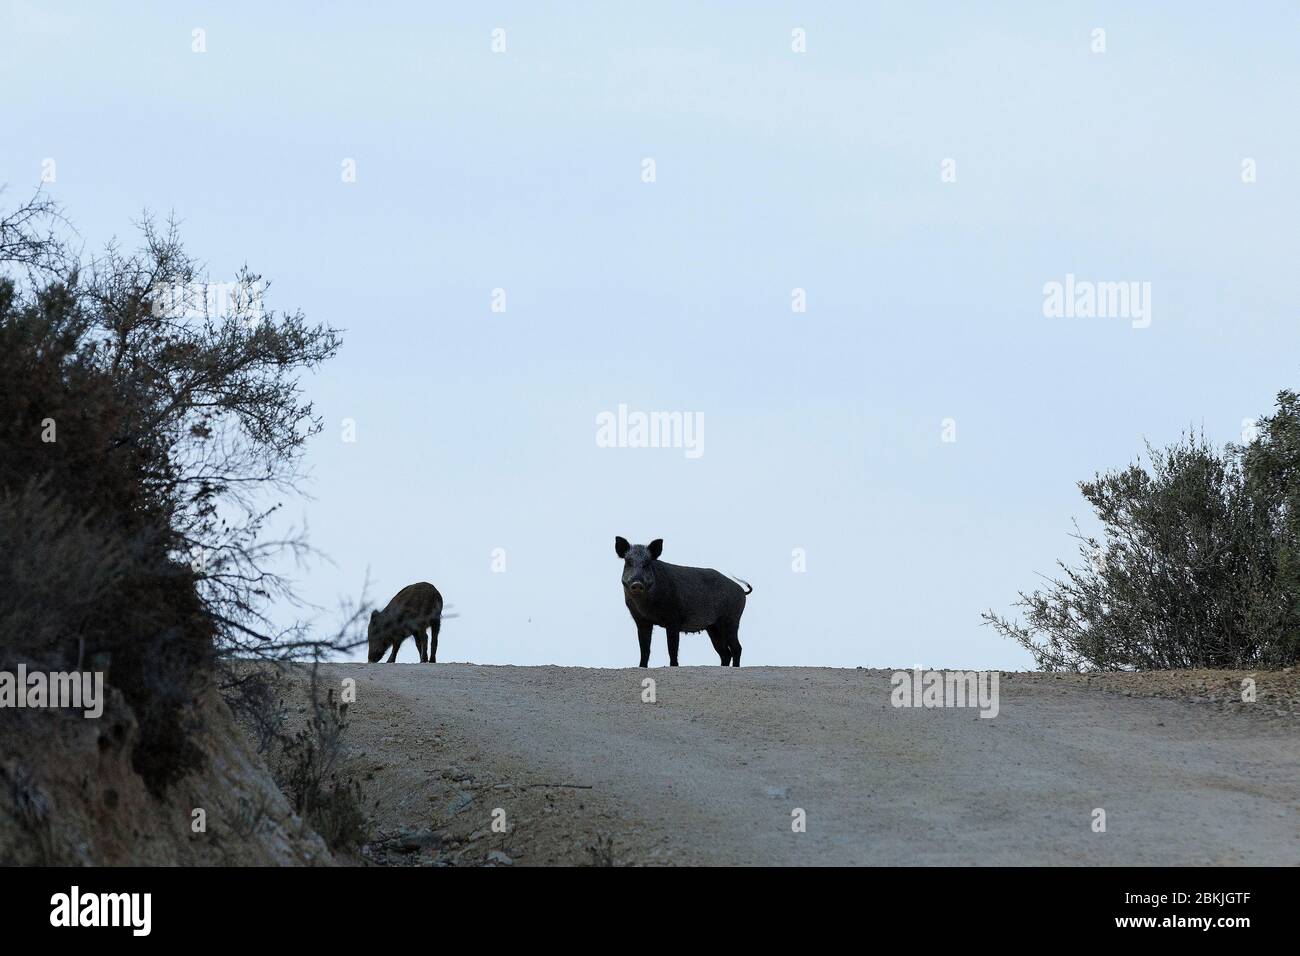 France, Corse du Sud, Domaine de Murtoli, wild boars (Compulsory Mention Domaine de Murtoli) Stock Photo